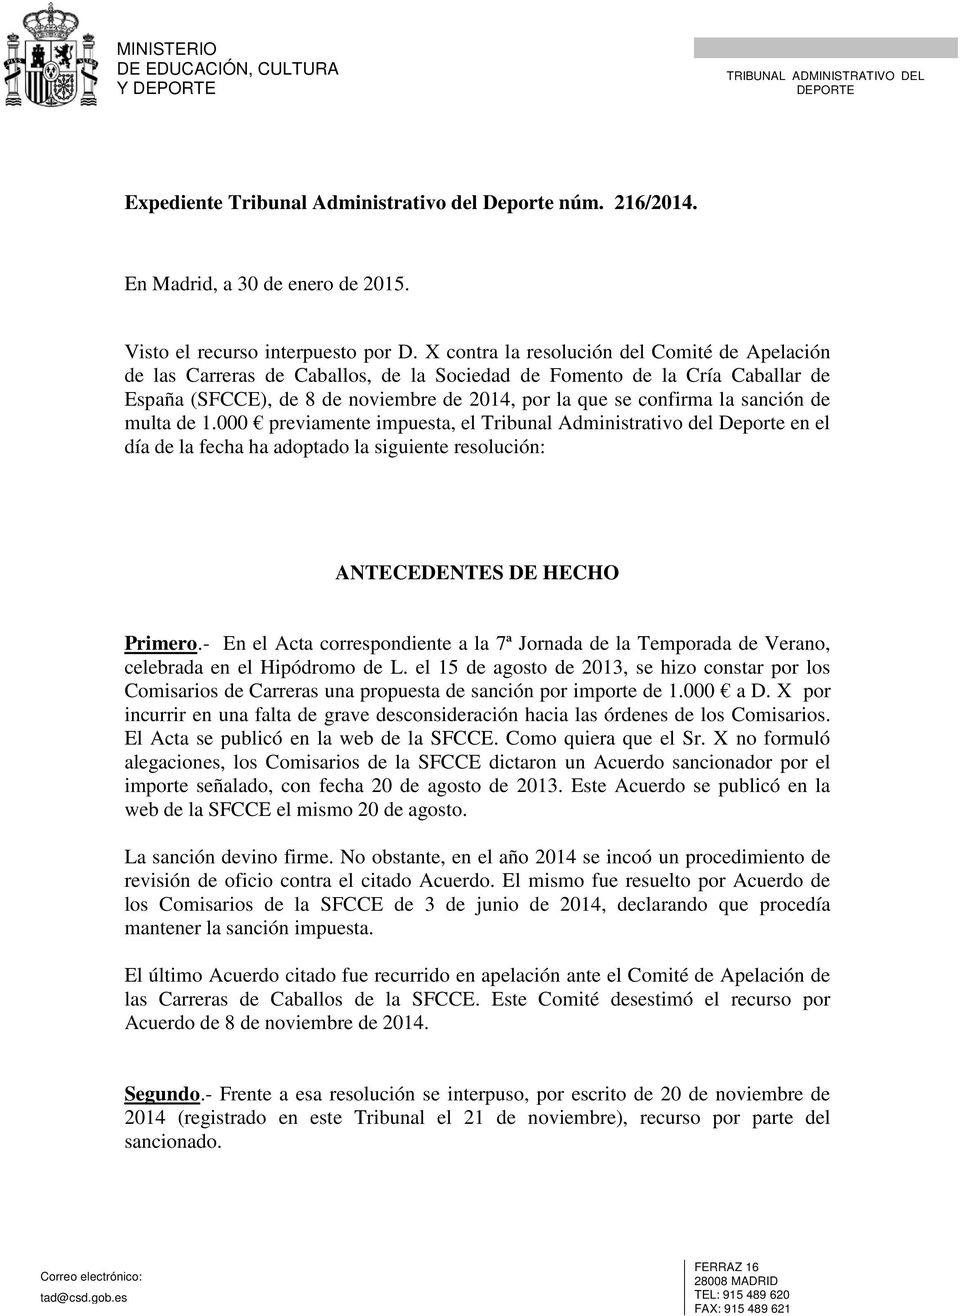 sanción de multa de 1.000 previamente impuesta, el Tribunal Administrativo del Deporte en el día de la fecha ha adoptado la siguiente resolución: ANTECEDENTES DE HECHO Primero.